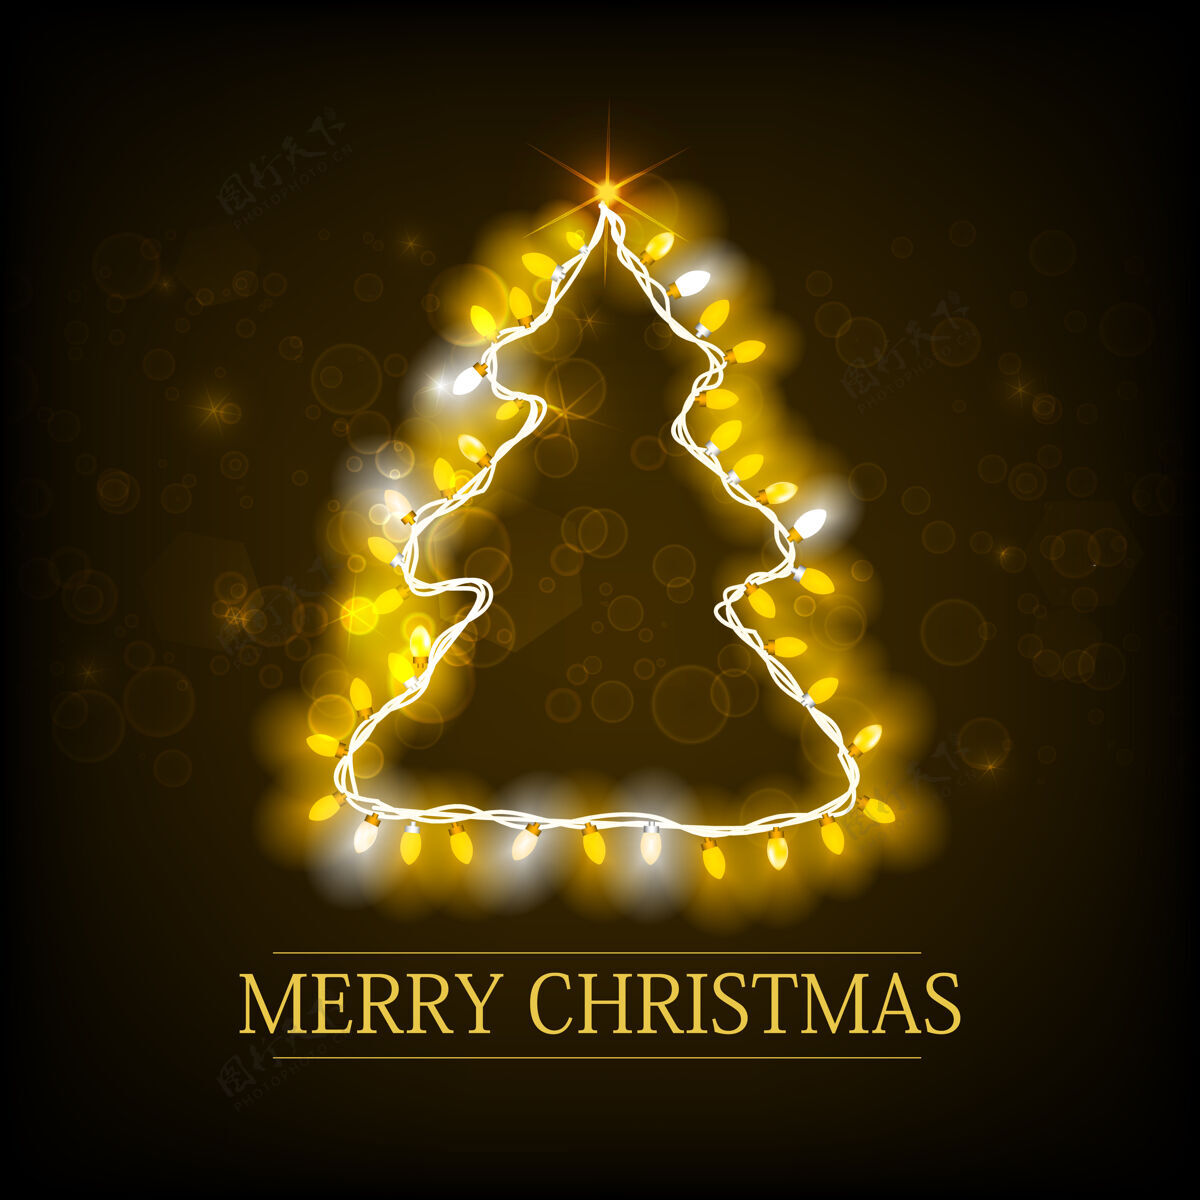 圣诞圣诞卡上刻有圣诞树轮廓和夜光花环黑色礼物节日